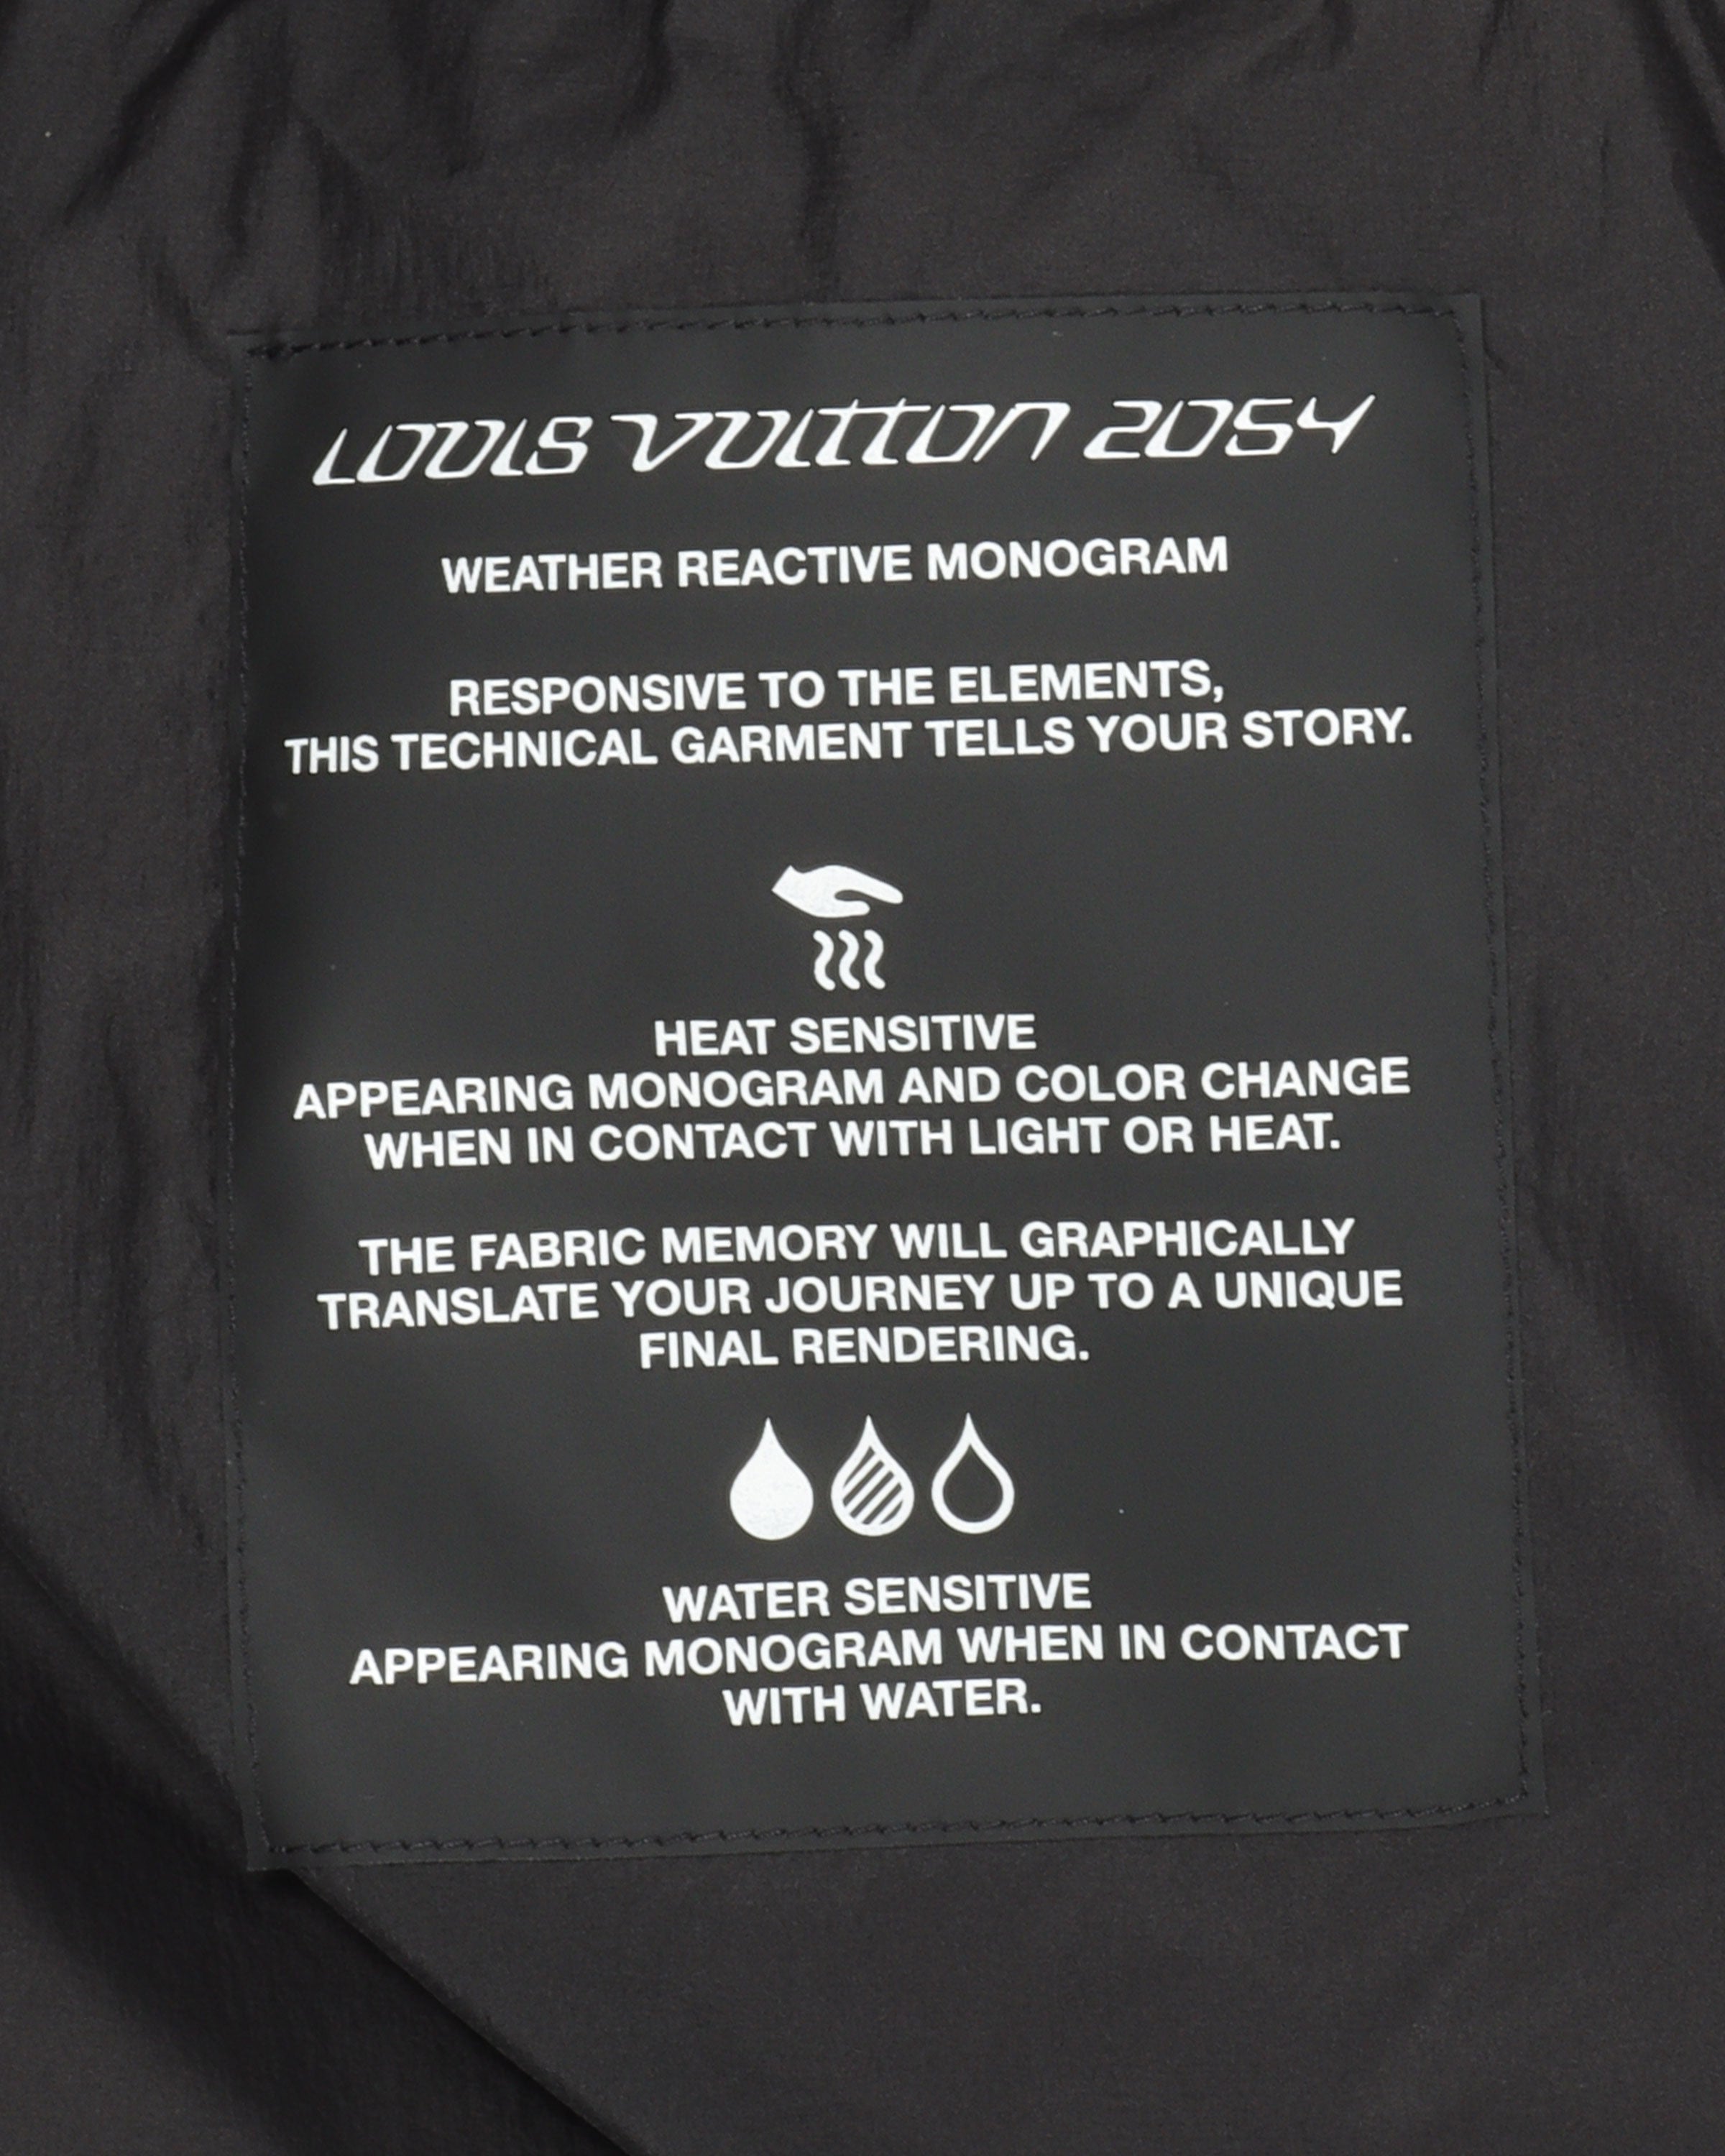 Louis Vuitton 2054 Heat Reactive Puffer - Men - Ready-to-Wear